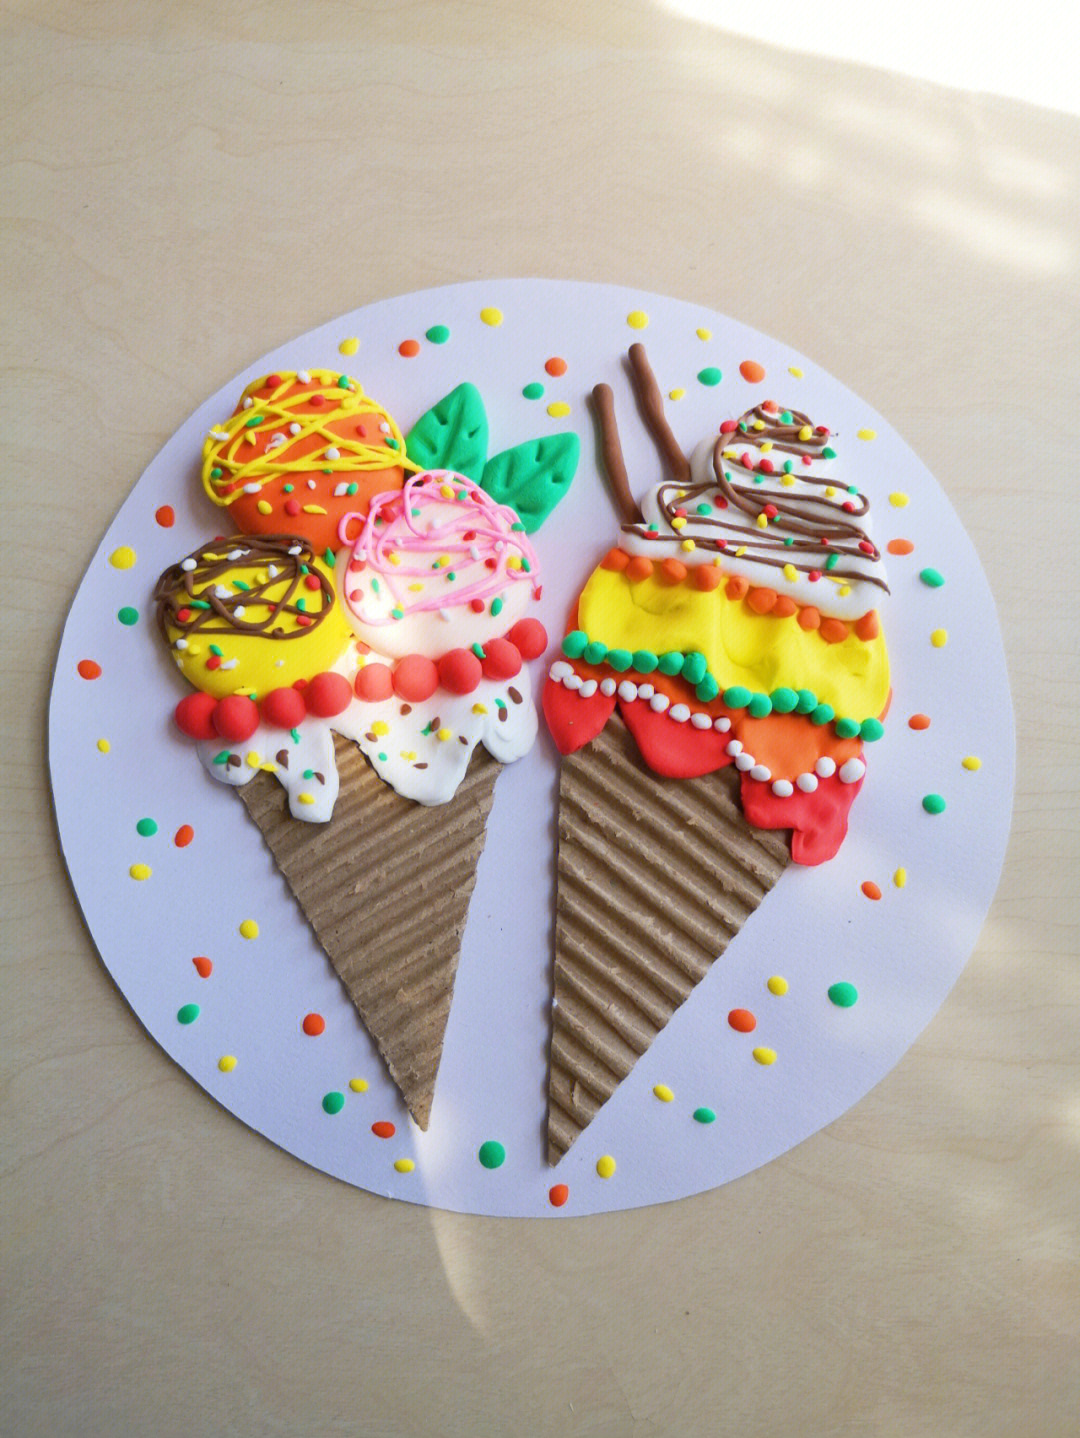 黏土冰淇淋创意画图片